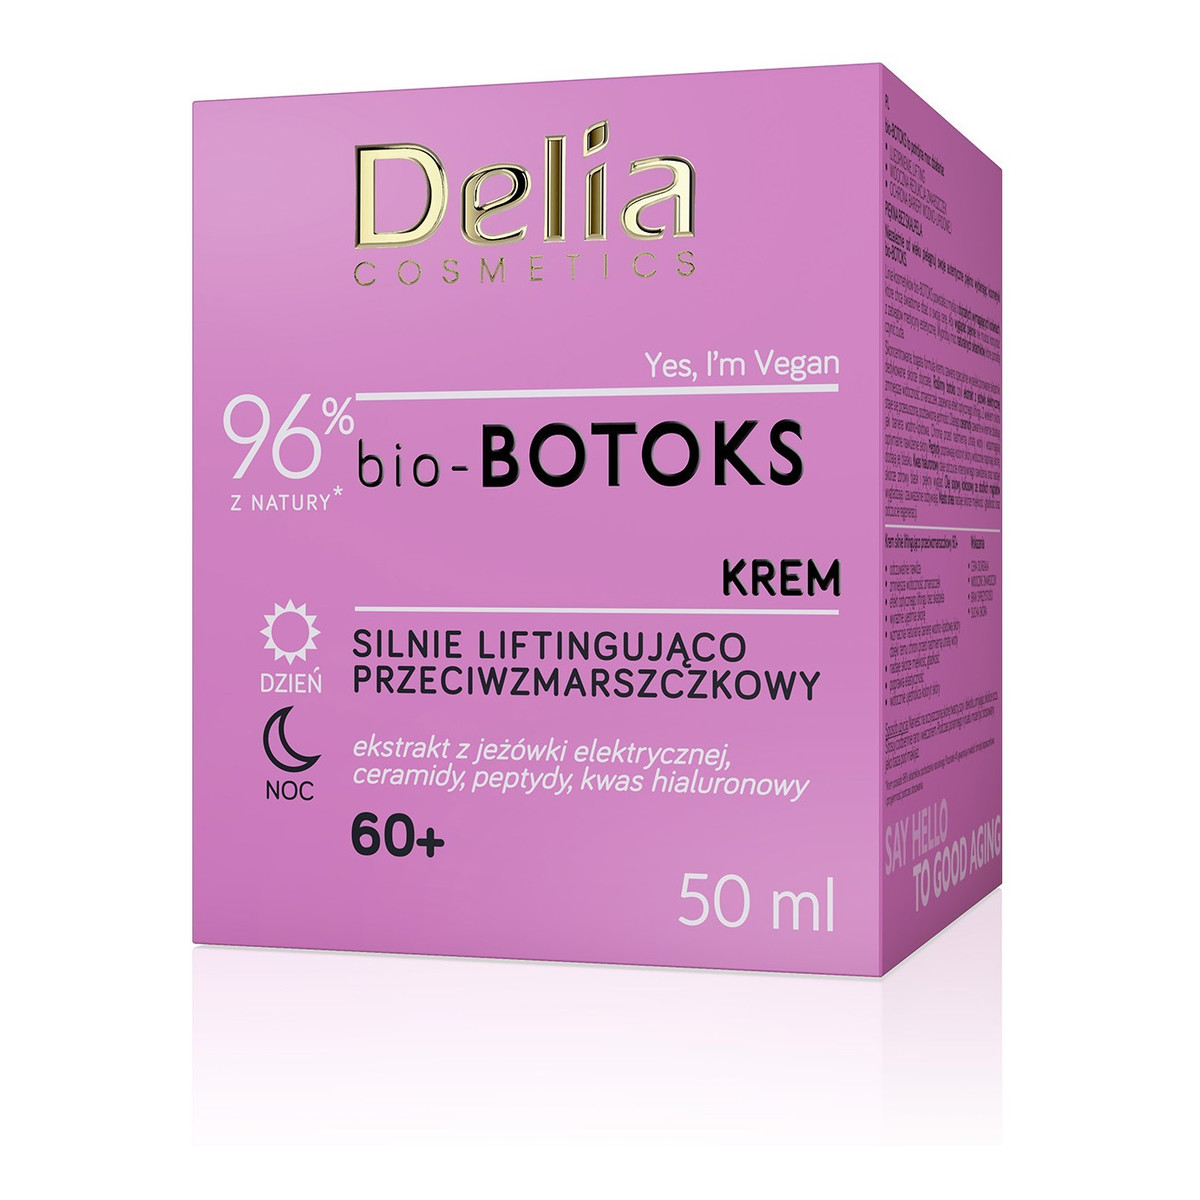 Delia Cosmetics bio-botoks Krem silnie liftingująco przeciwzmarszczkowy 60+ na dzień i noc 50ml